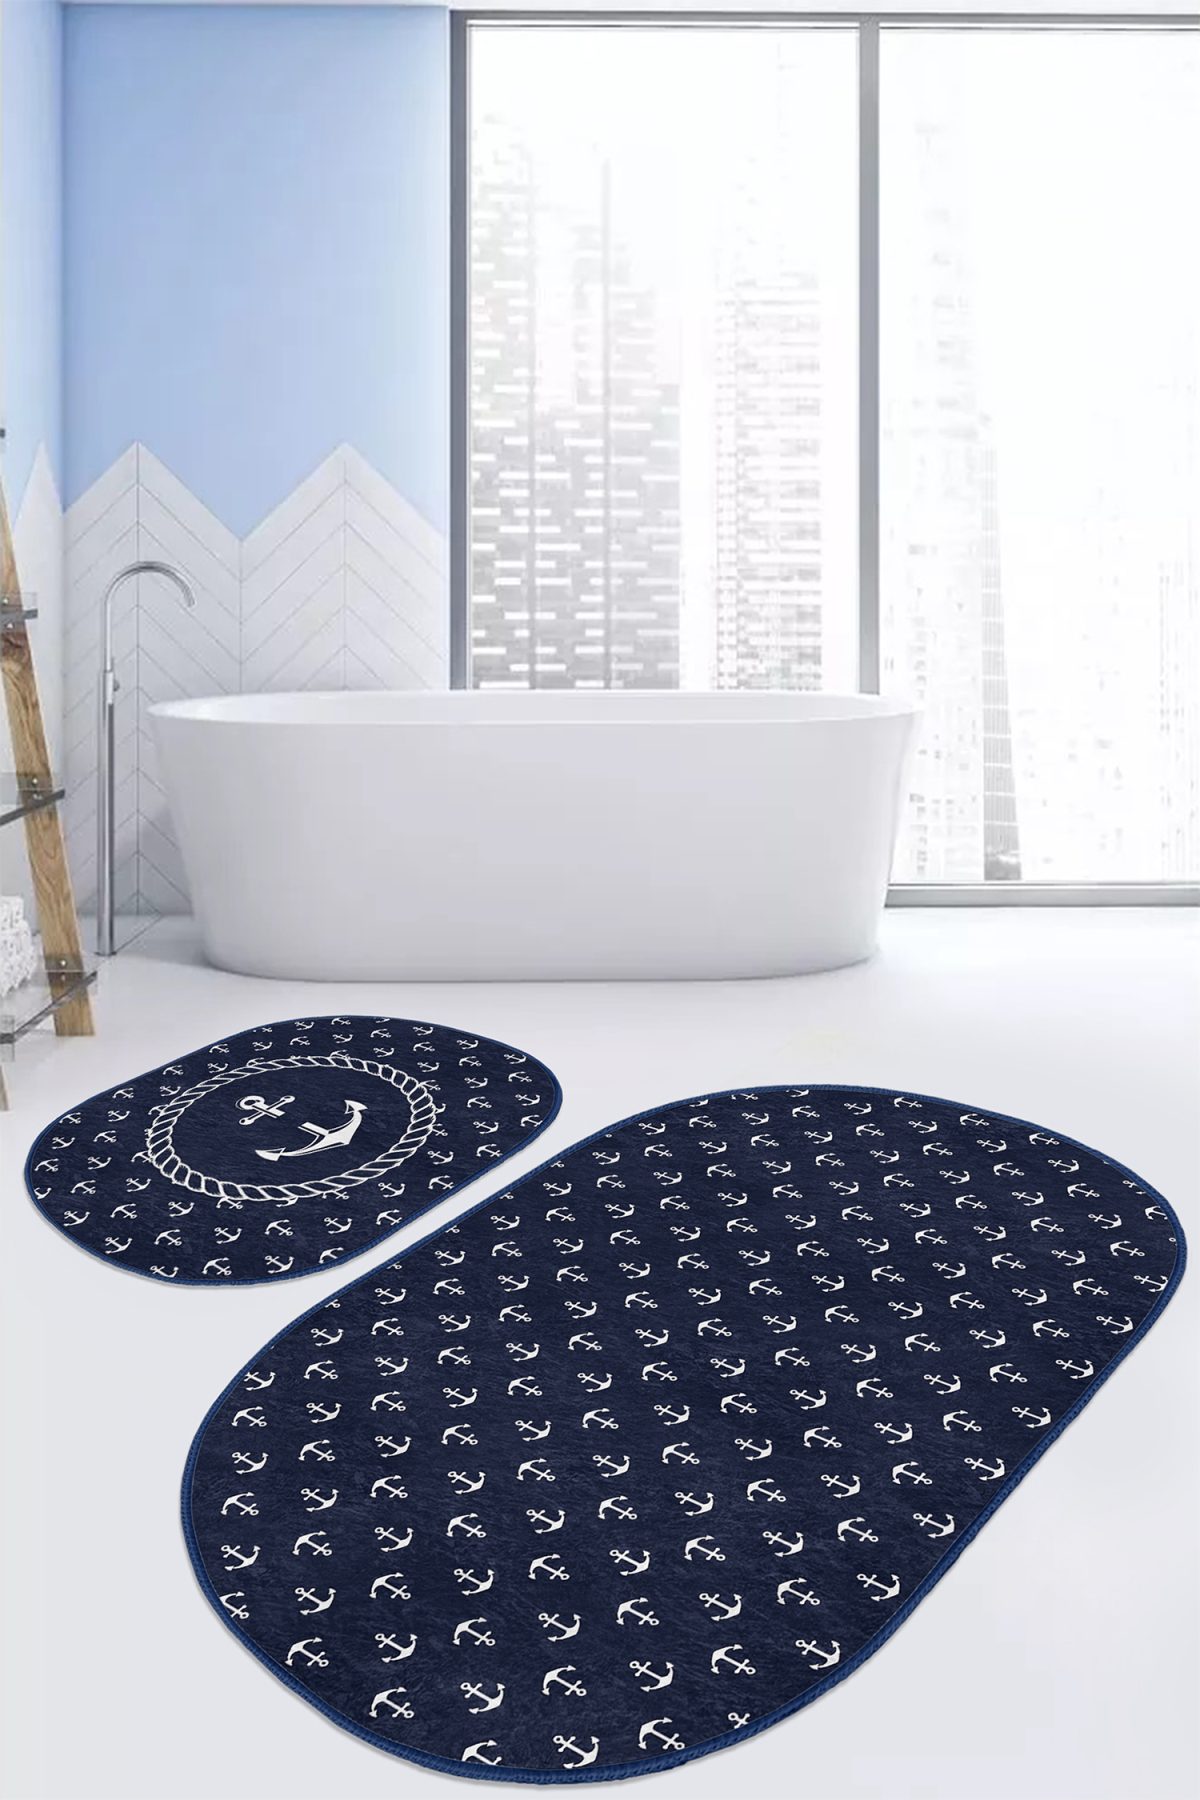 Lacivert Zemin Çapa Tasarımlı Dijital Baskılı 2'li Oval Kaymaz Tabanlı Banyo & Mutfak Paspas Takımı Realhomes